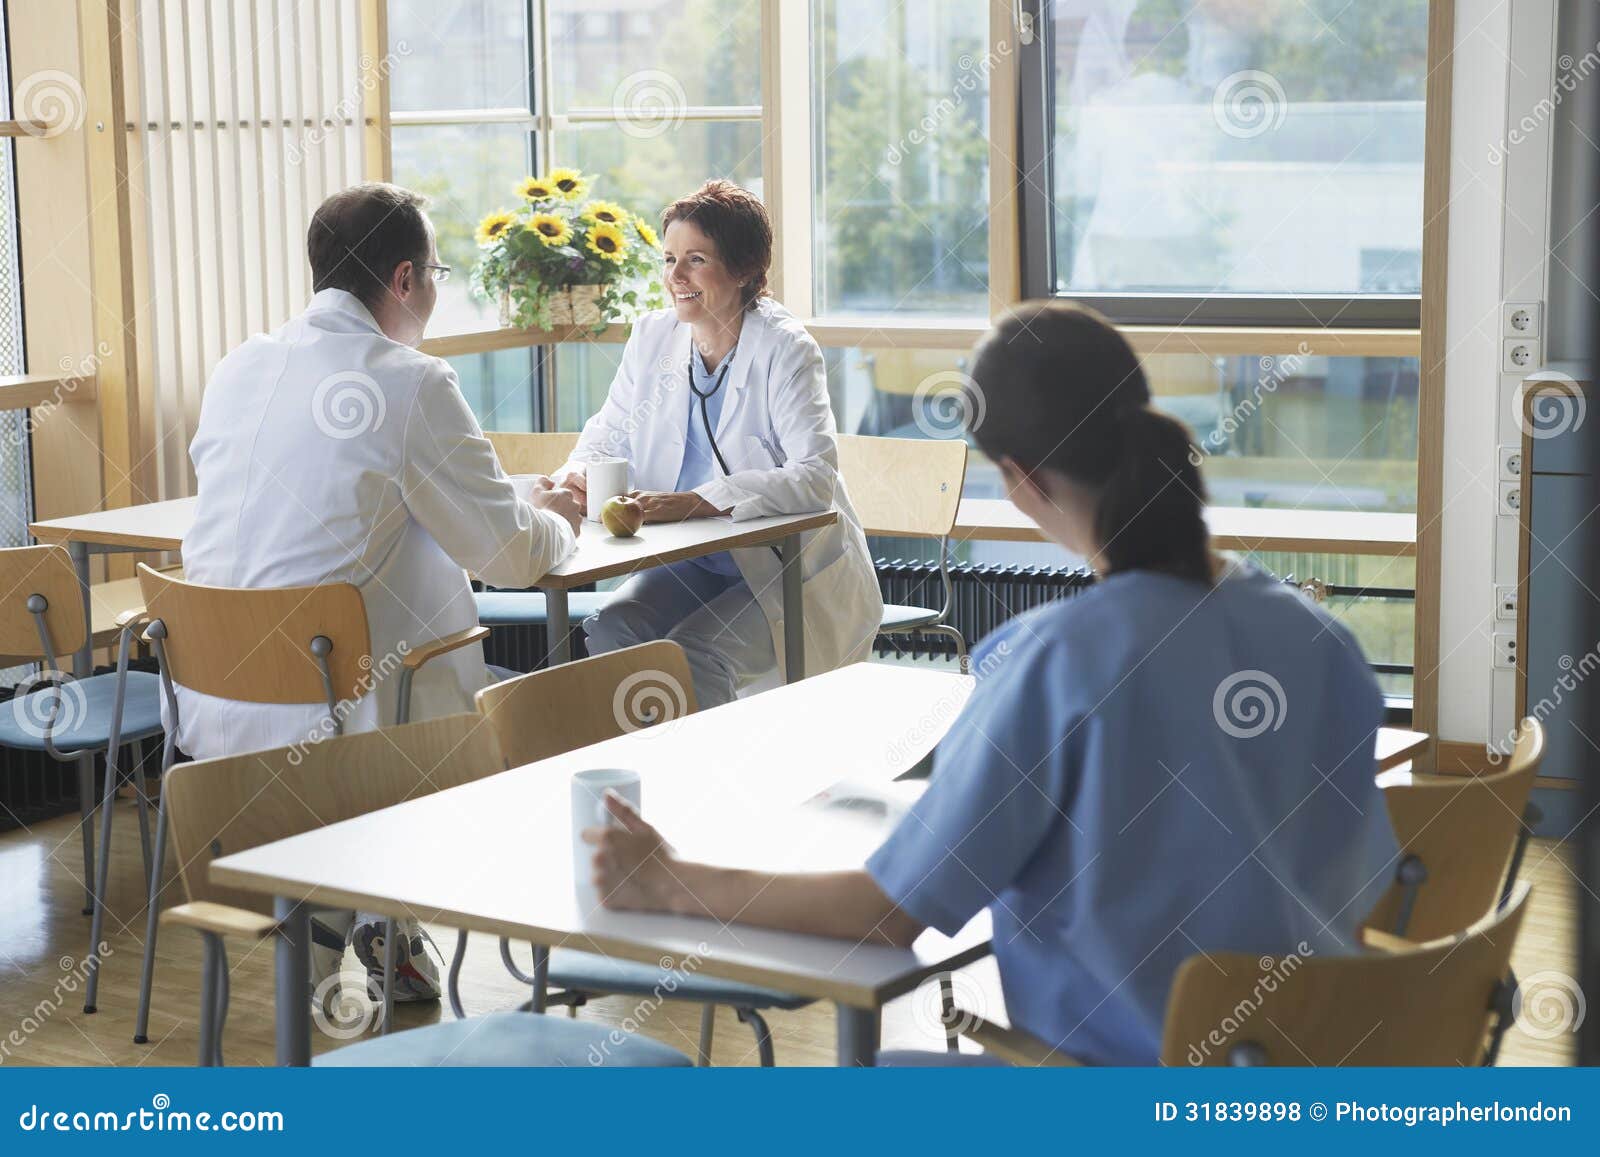 doctors on work break in cafeteria